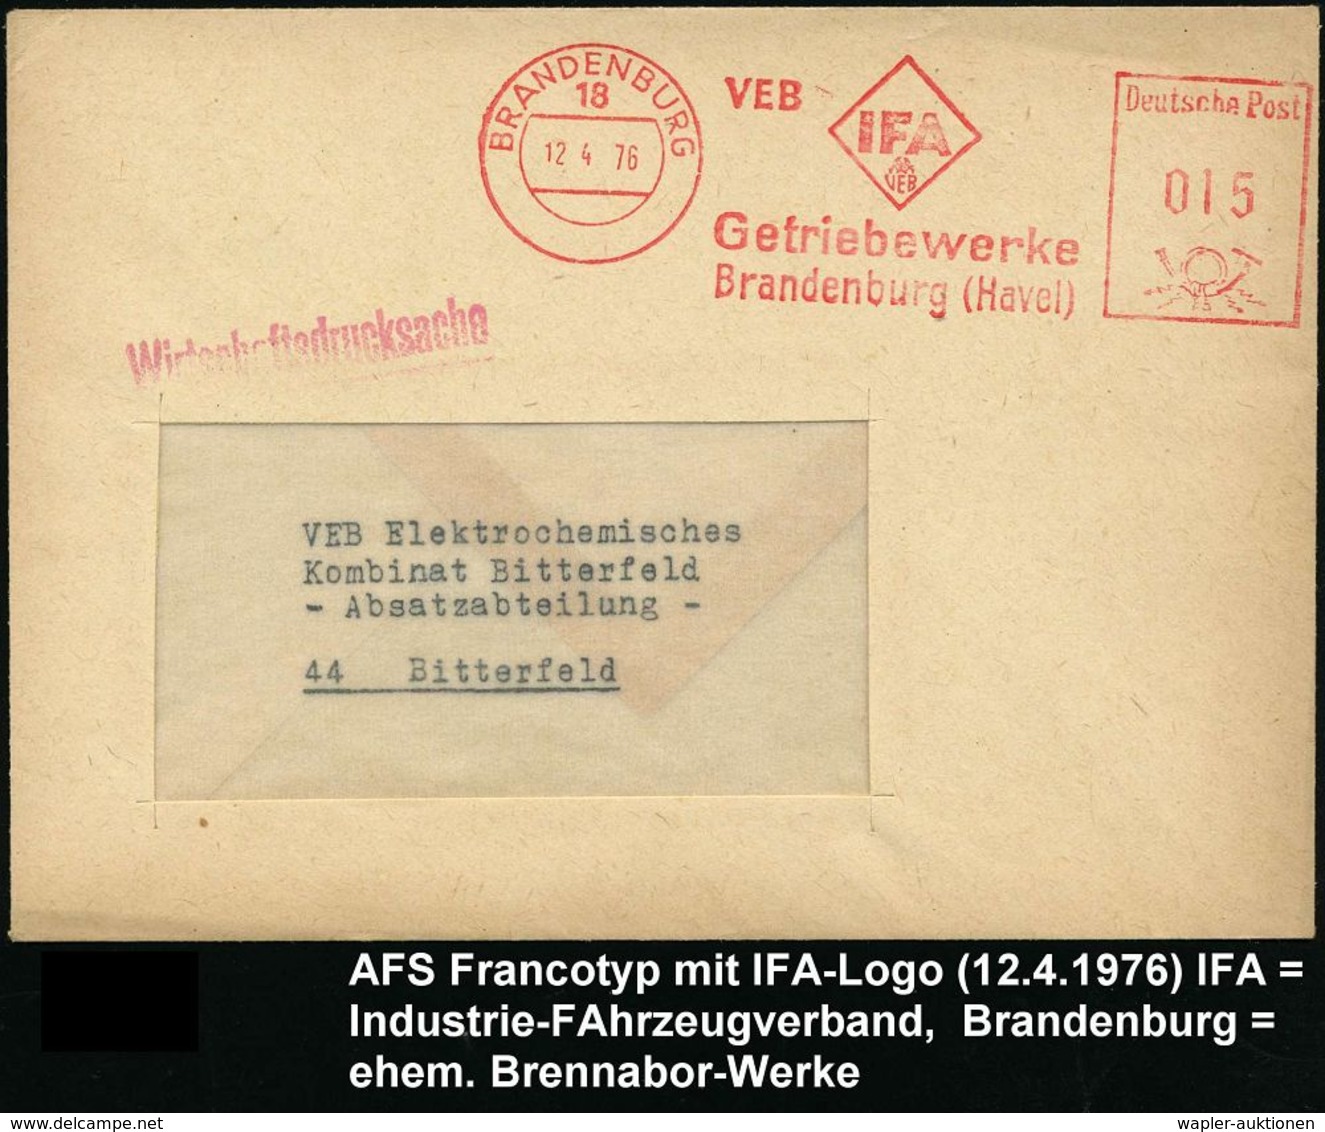 AUTOHERSTELLER D.D.R. : 18 BRANDENBURG/ VEB IFA/ VEB/ Getriebewerke 1976 (12.4.) AFS (Logo) = Ex Brennabor-Werke = Trakt - Autos